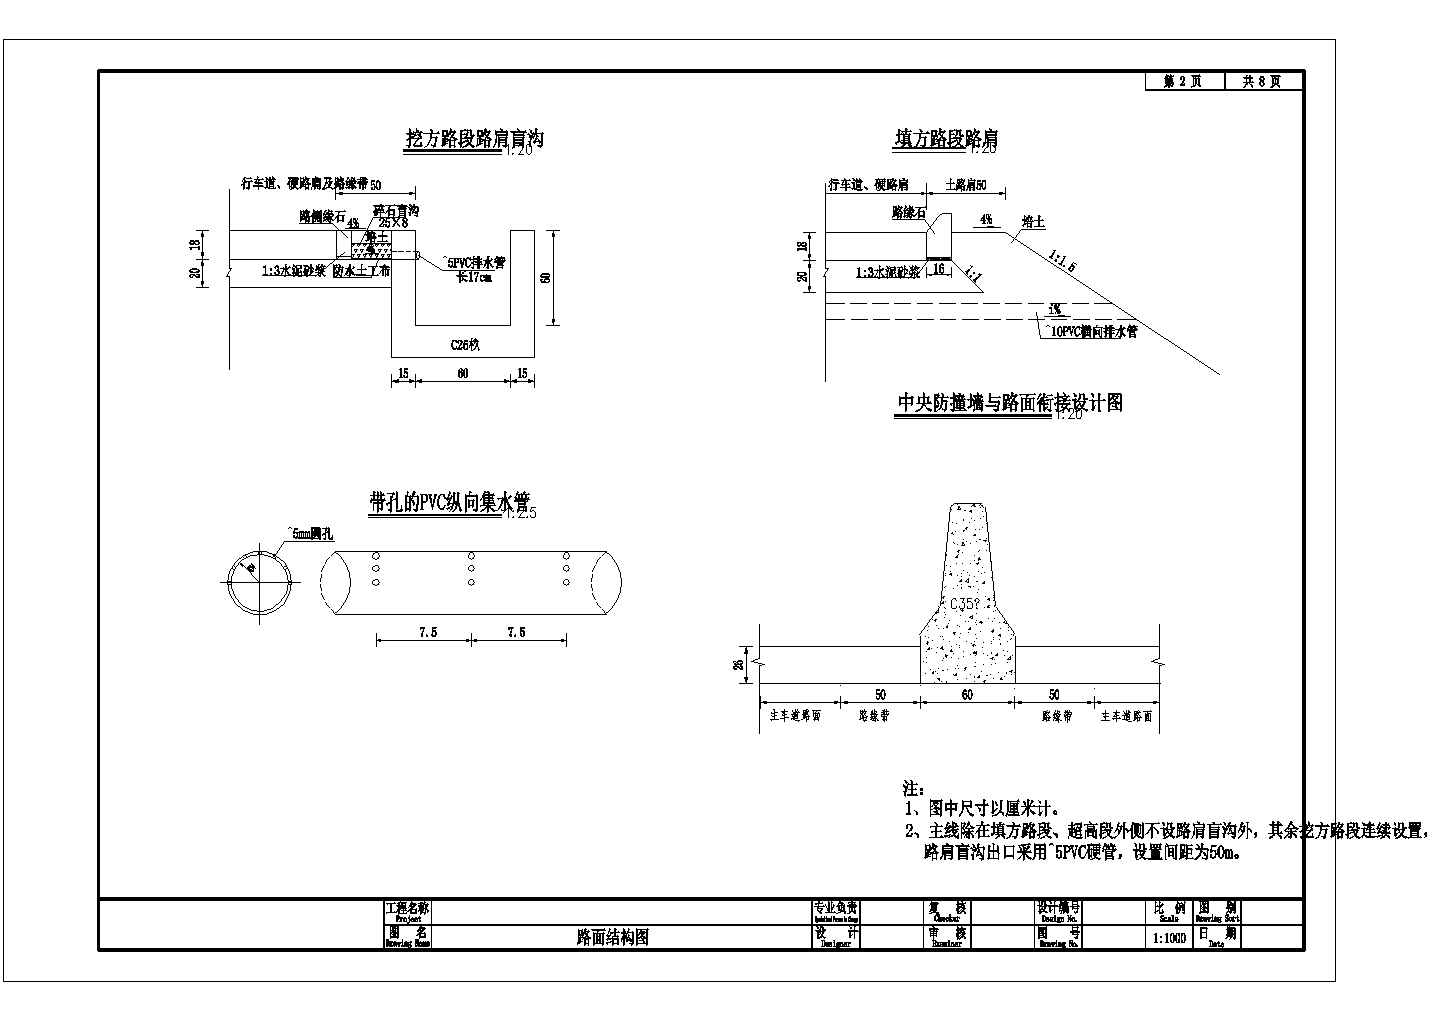 S-3-22 路面结构设计图